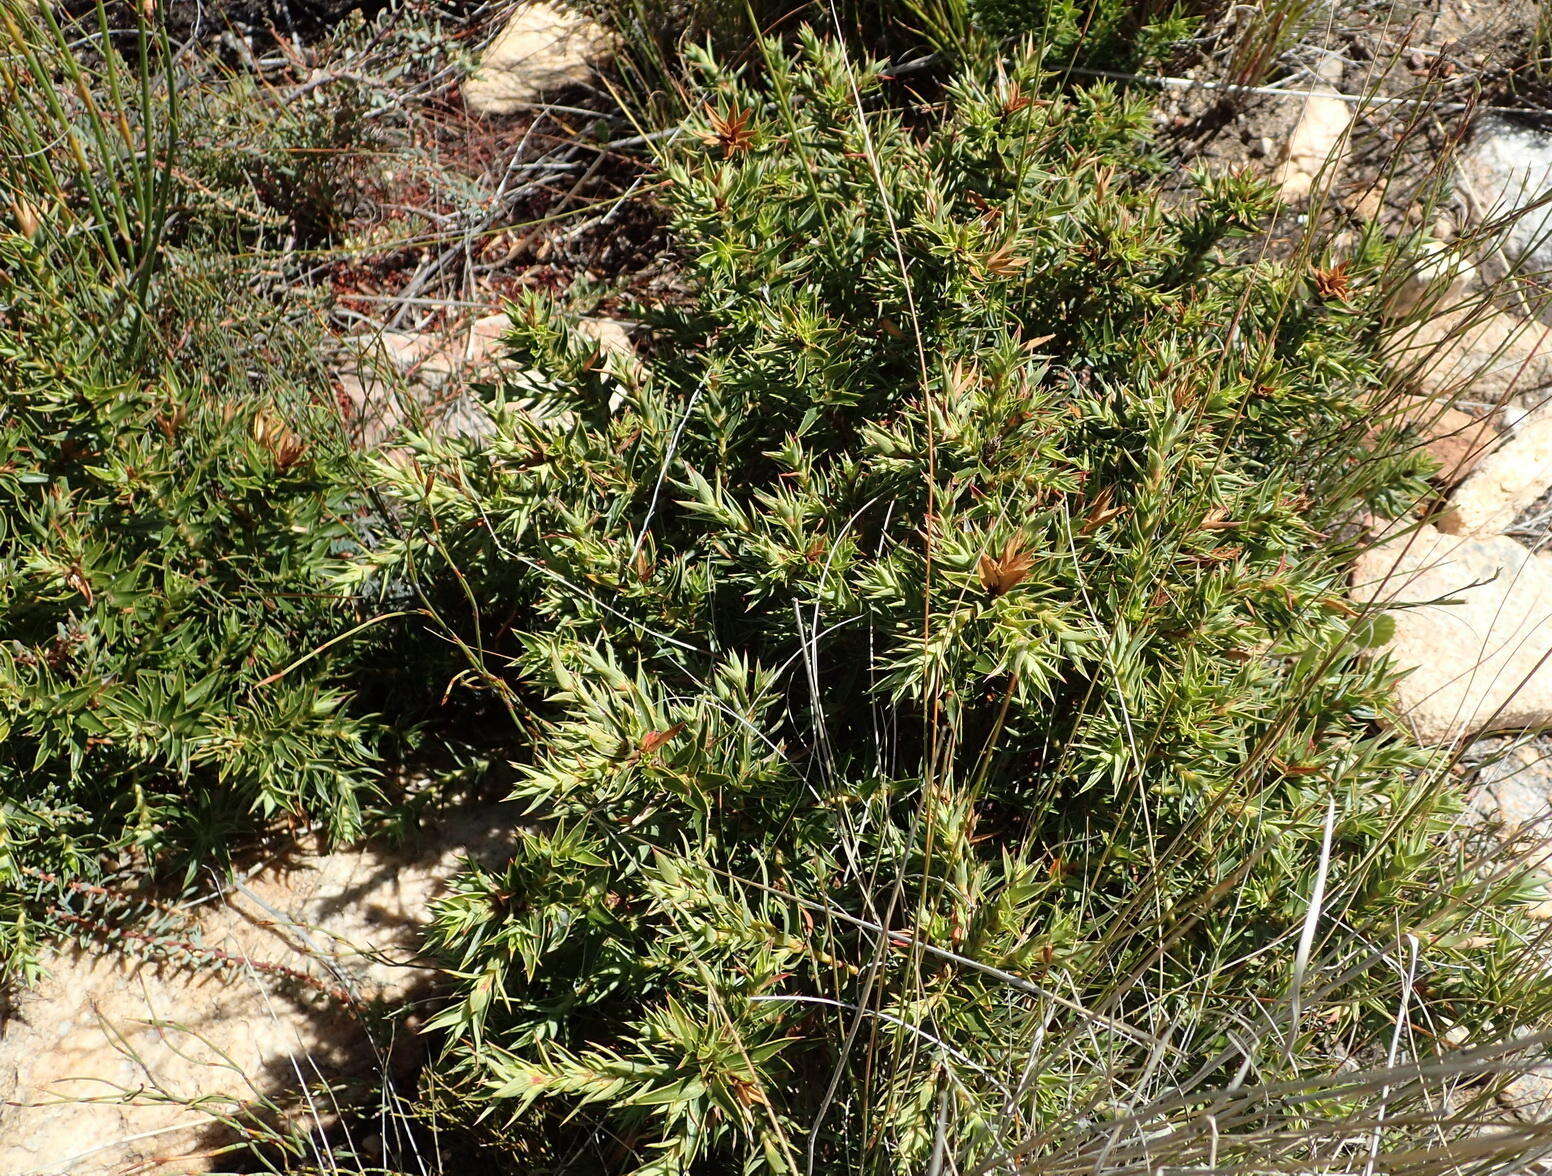 Image of Cliffortia ilicifolia var. cordifolia (Lam.) Harv.